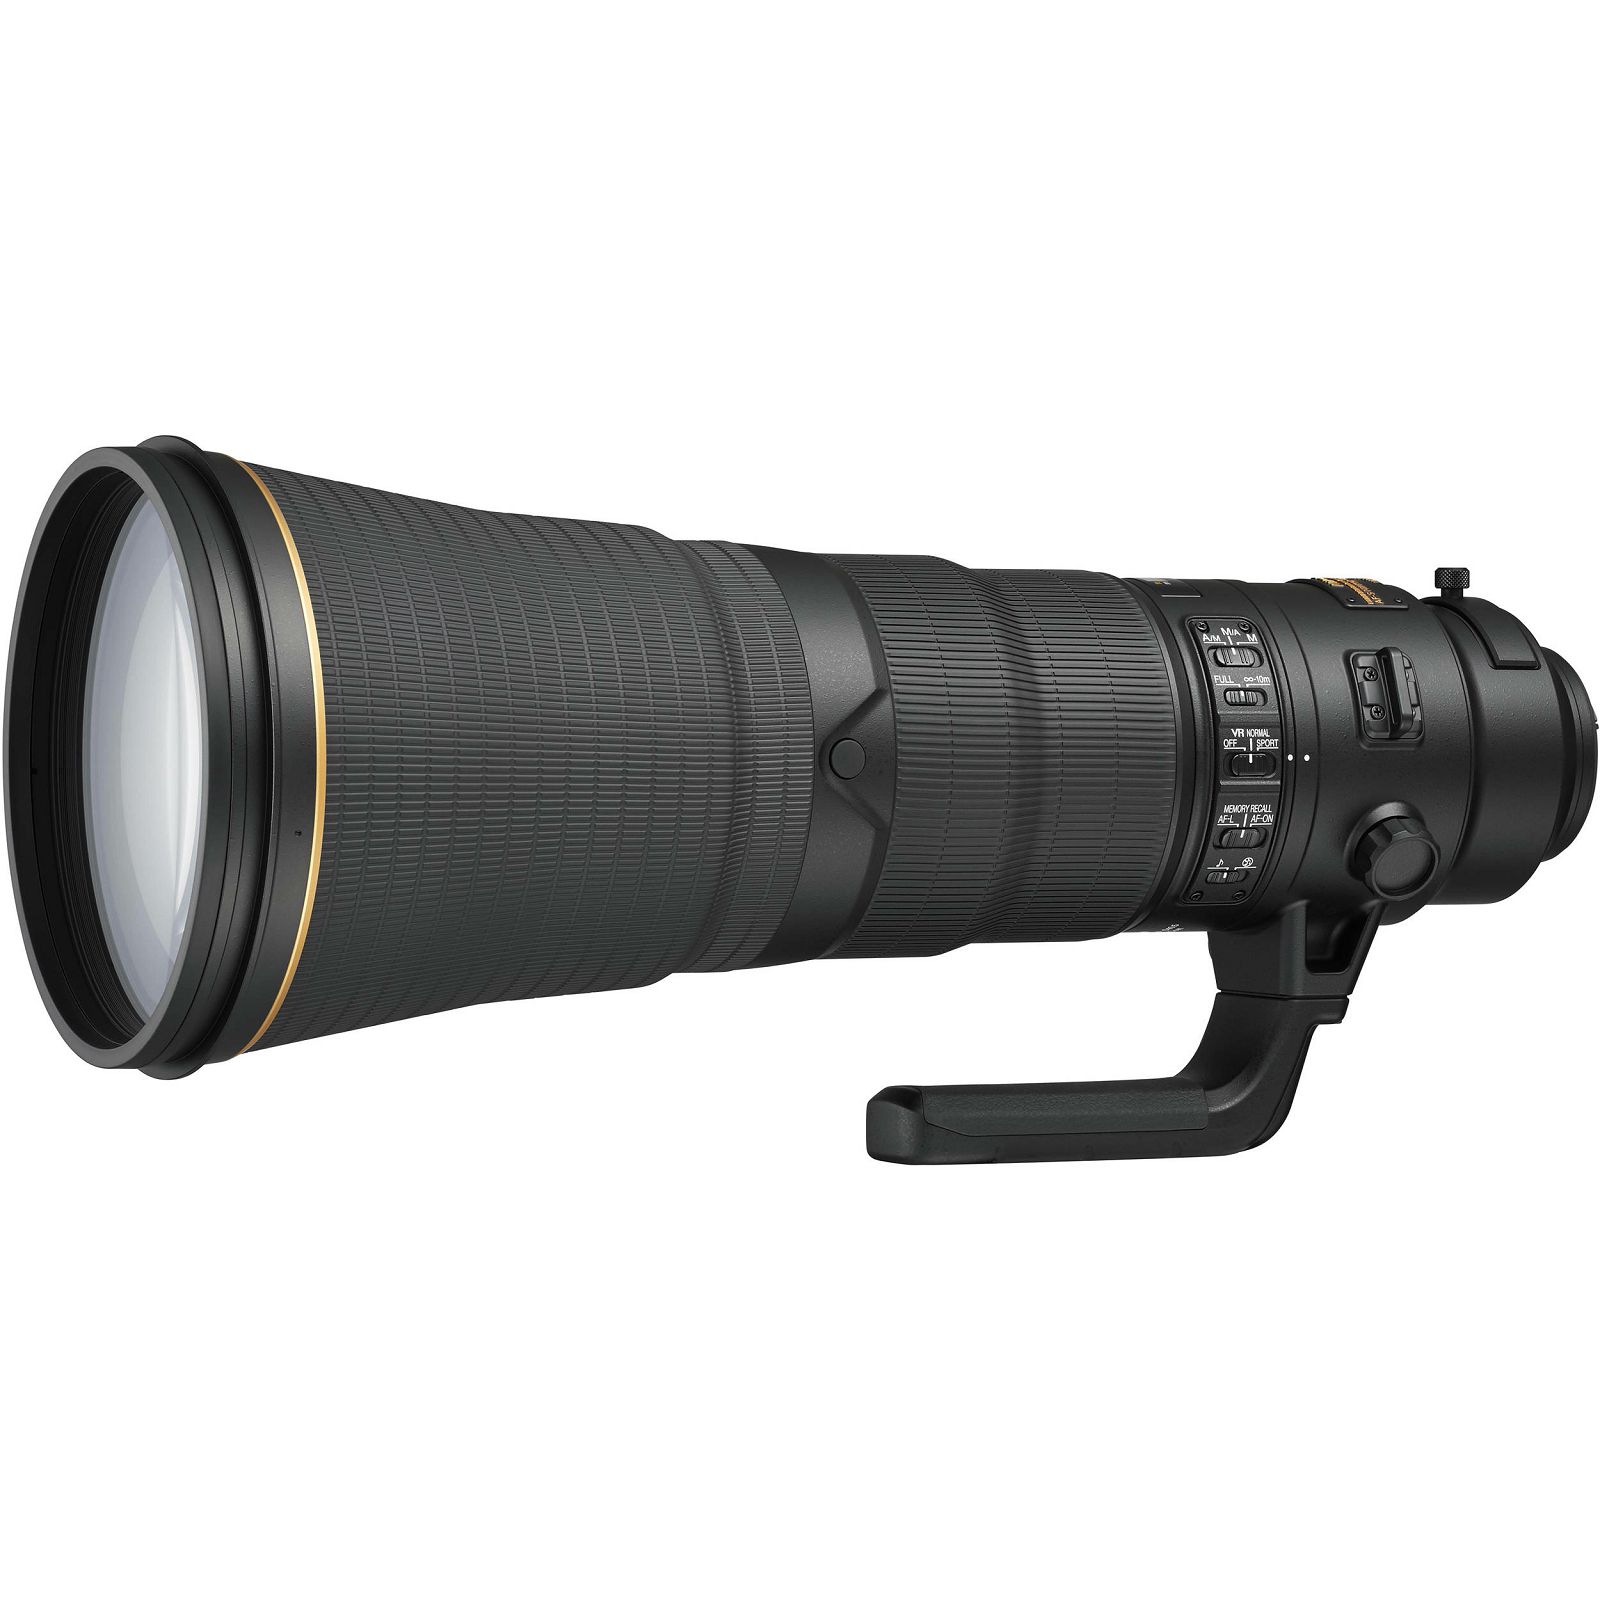 Nikon AF-S 600mm f/4E FL ED VR FX telefoto objektiv fiksne žarišne duljine Nikkor auto focus lens 600 f/4 E F4 F4E (JAA534DA)